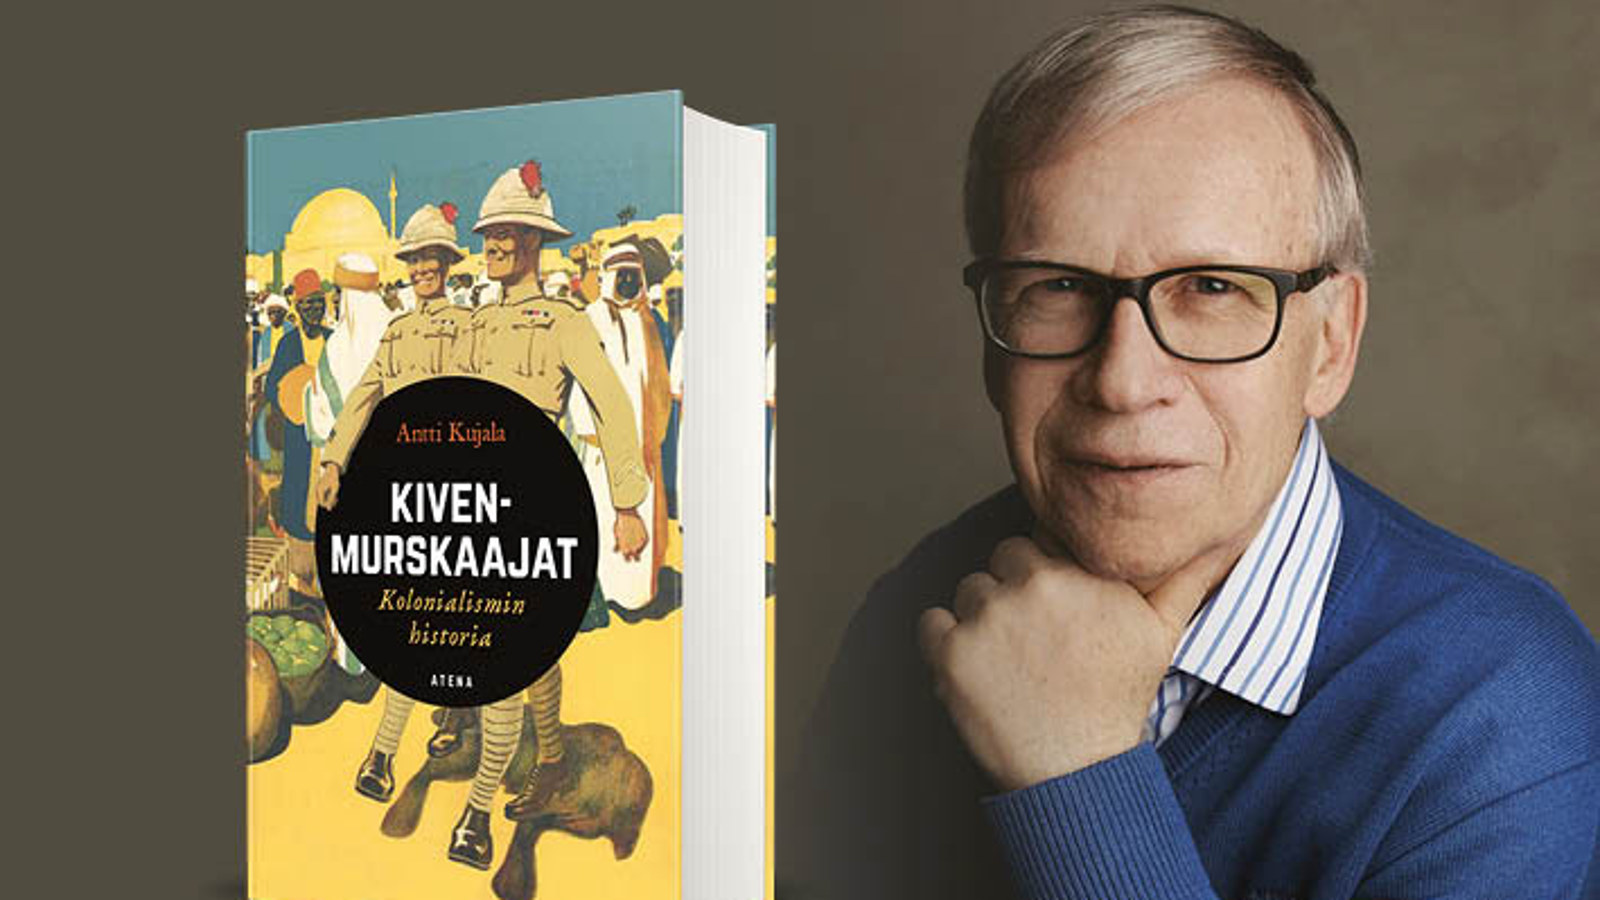 Kuvassa on Antti Kujala kädessään kirja Kivenmurskaajat - Kolonialismin historia.